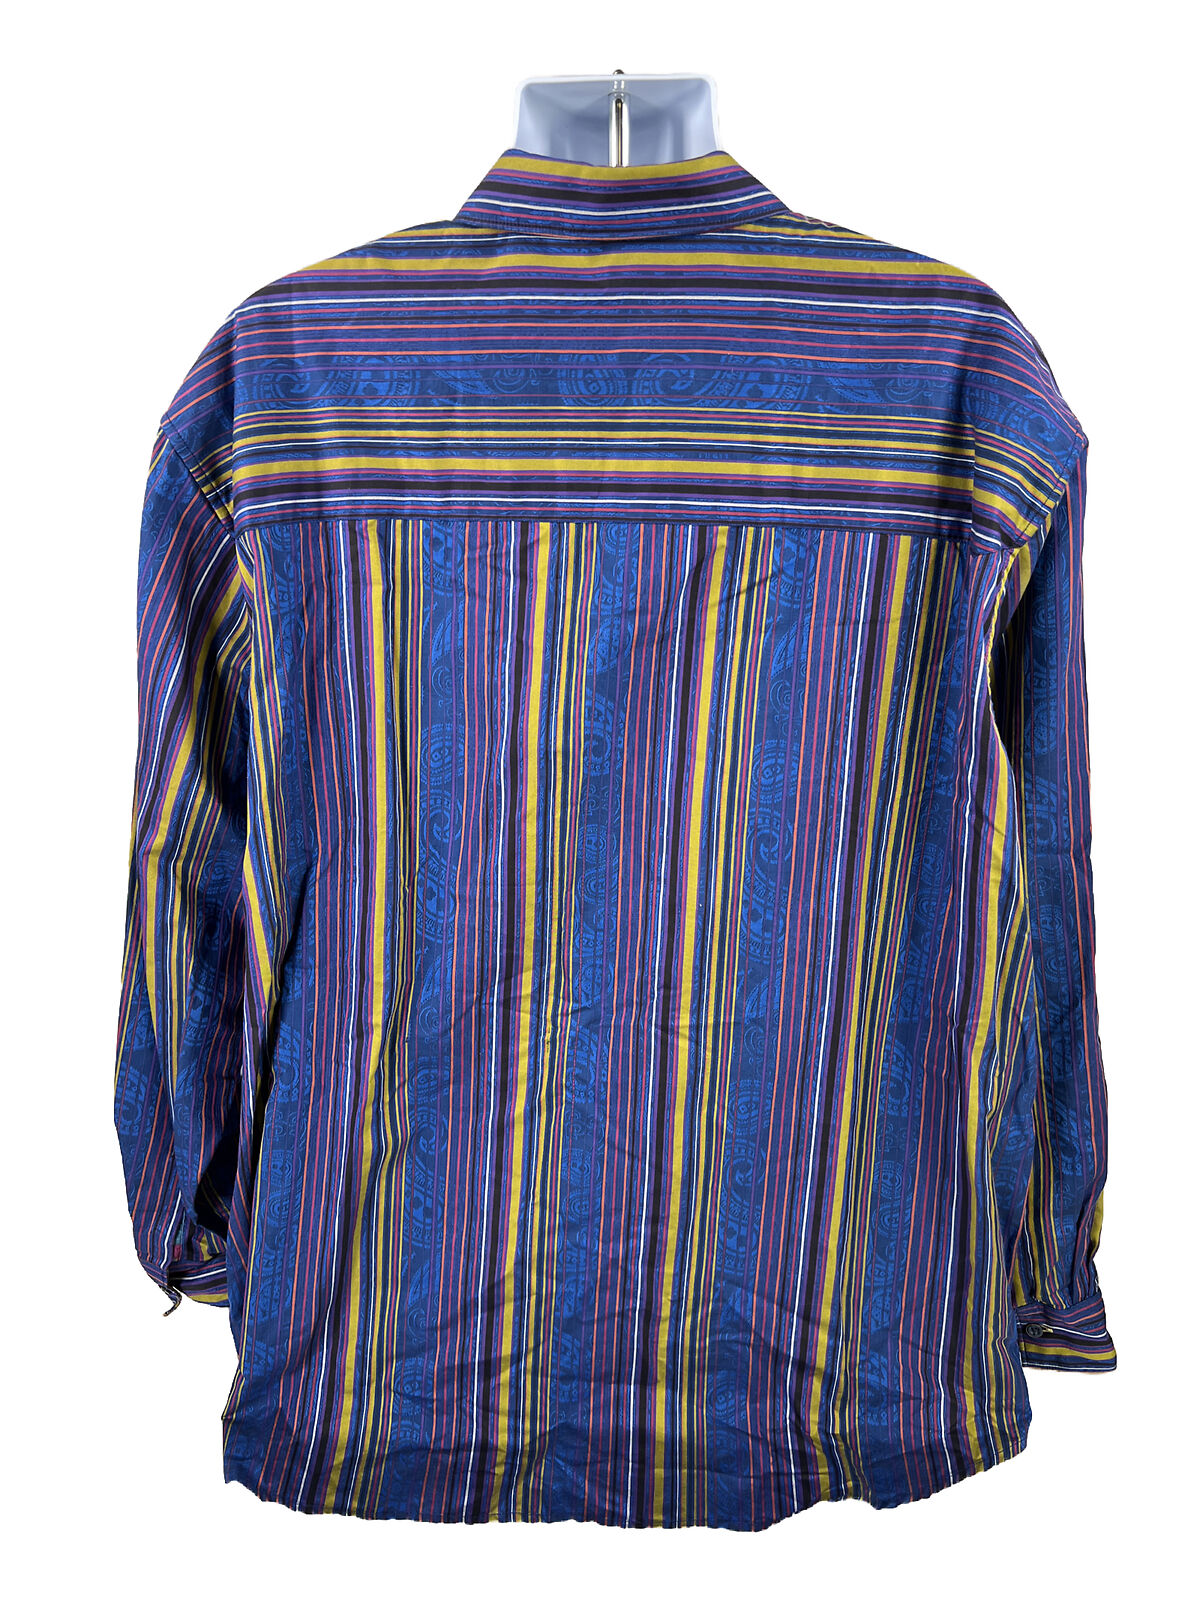 Robert Graham Men's Blue Striped Long Sleeve Button Up Shirt 4XL